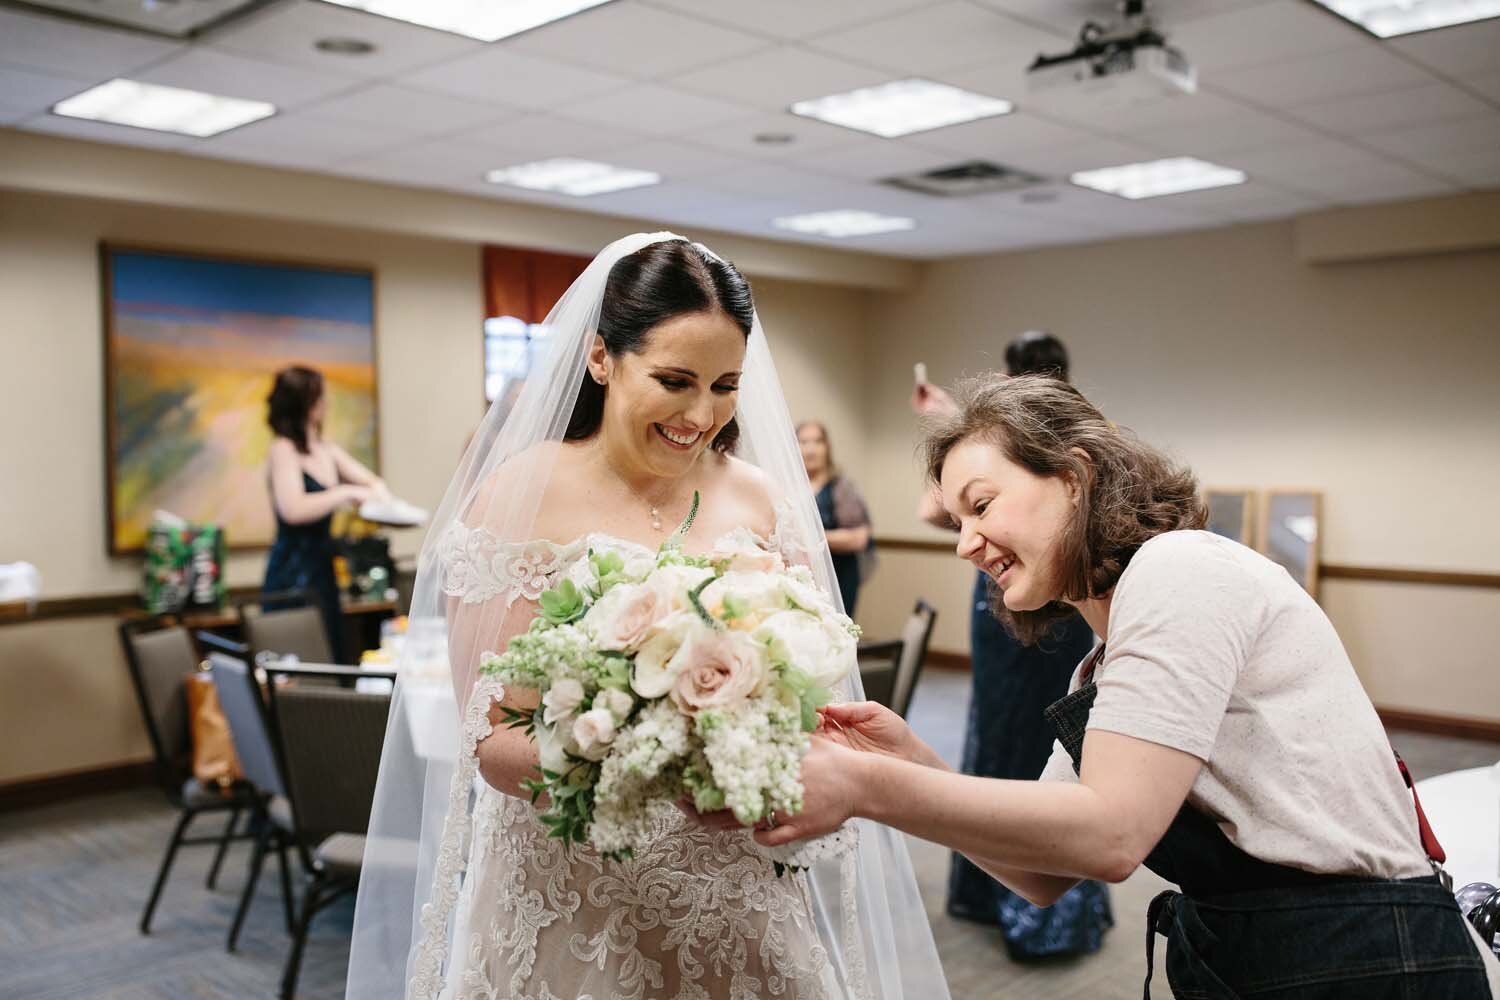 delivering a bouquet to a happy bride